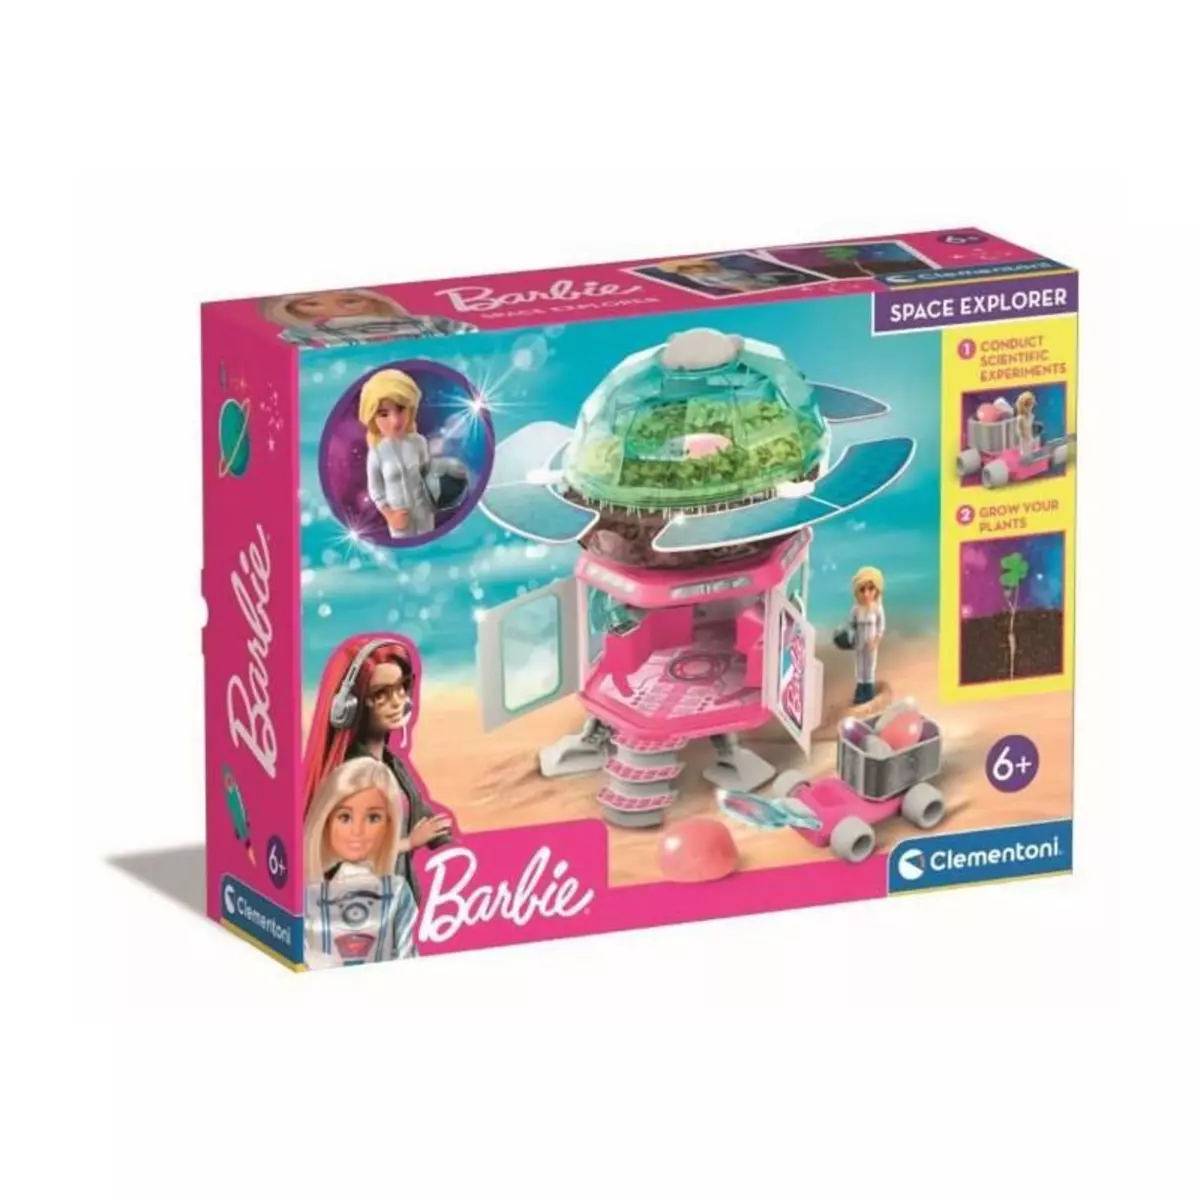 CLEMENTONI Barbie - Clementoni - Exploratrice spatiale